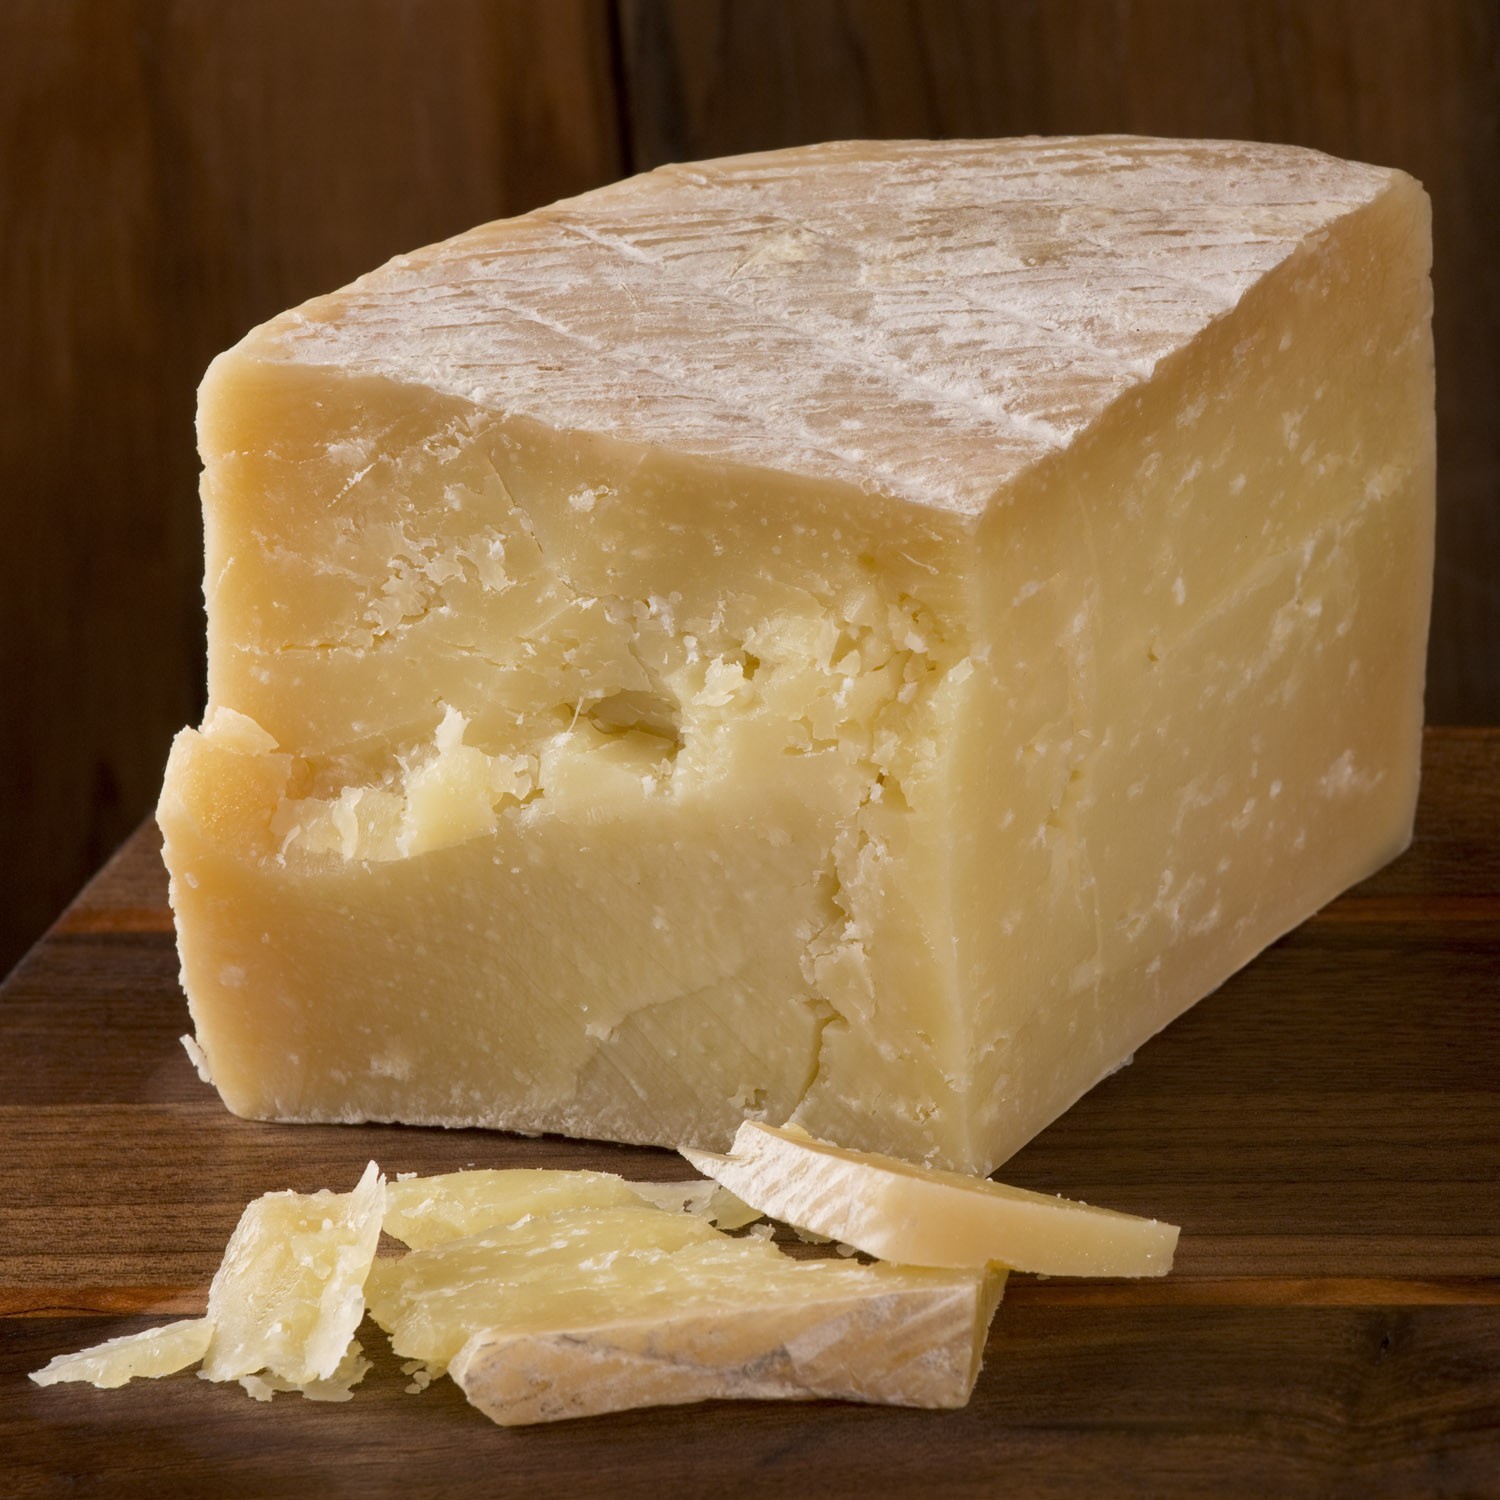 Сонник есть сыр. Сыр пекорино Романо. Итальянский сыр пекорино. Сыр пармезан пекорино Романо. Пекорино Романо ( овечий ).